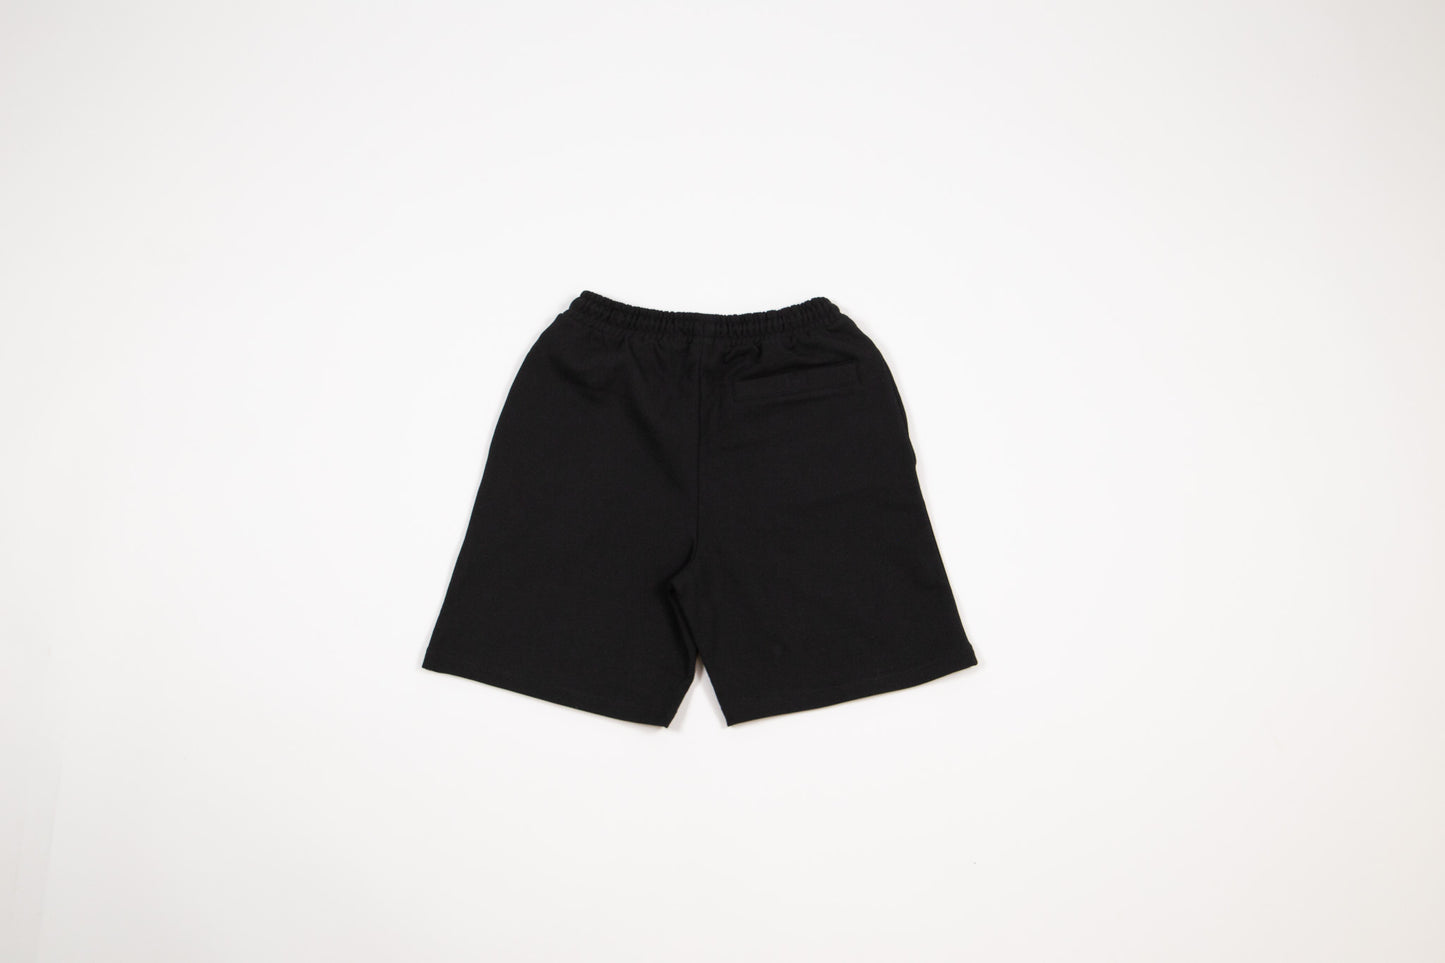 Signature Essential Shorts - BLACKK